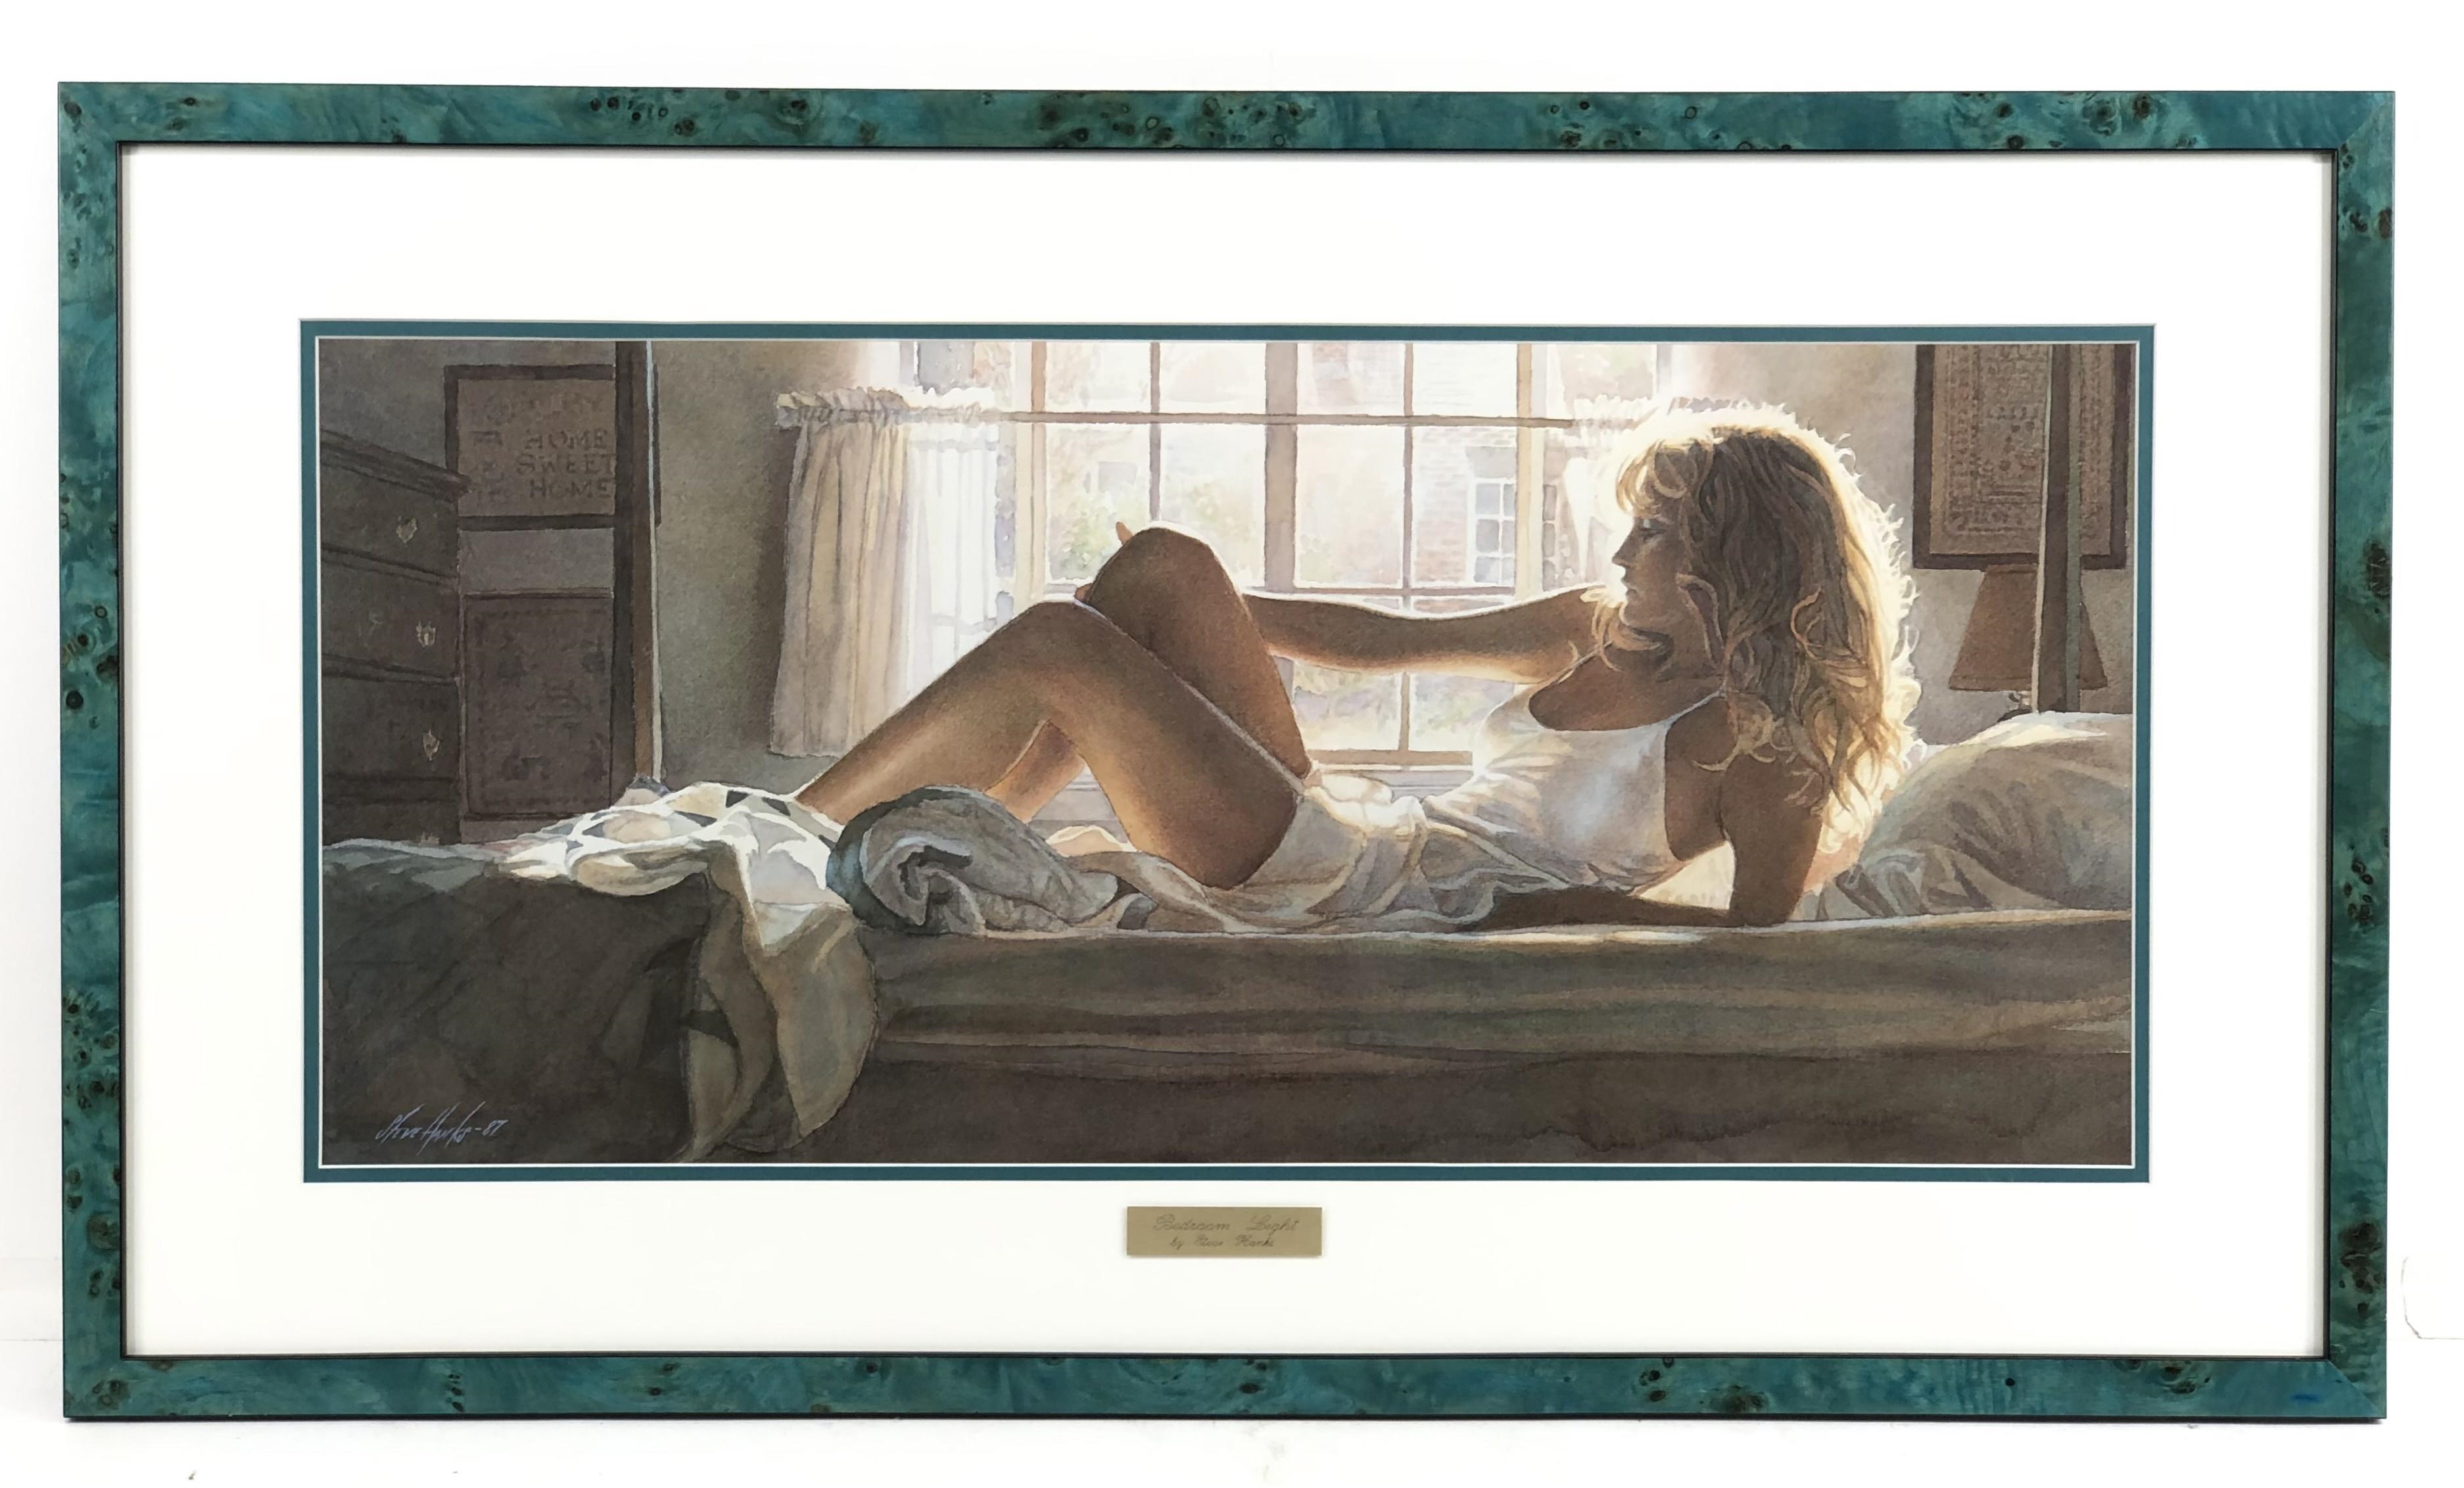 "BEDROOM LIGHT" by Steve Hanks, 1980